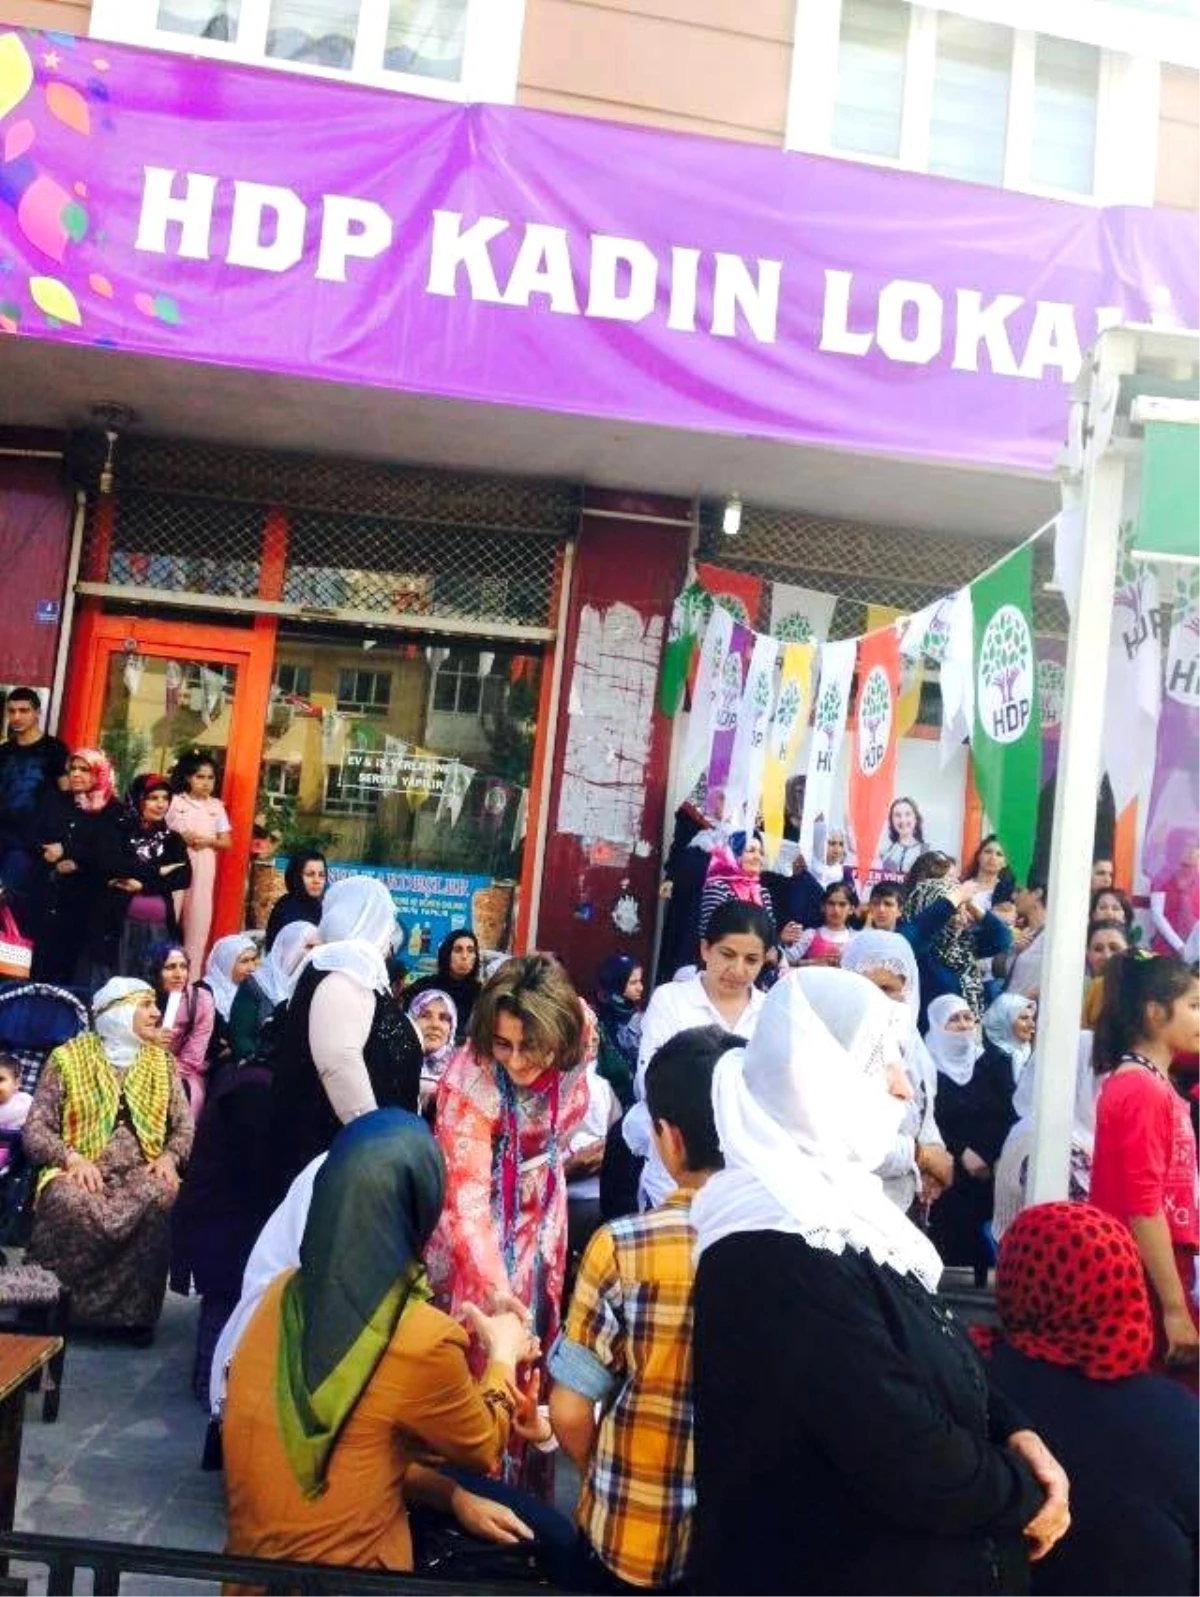 Kadınlara Has Seçim Lokali Açıldı